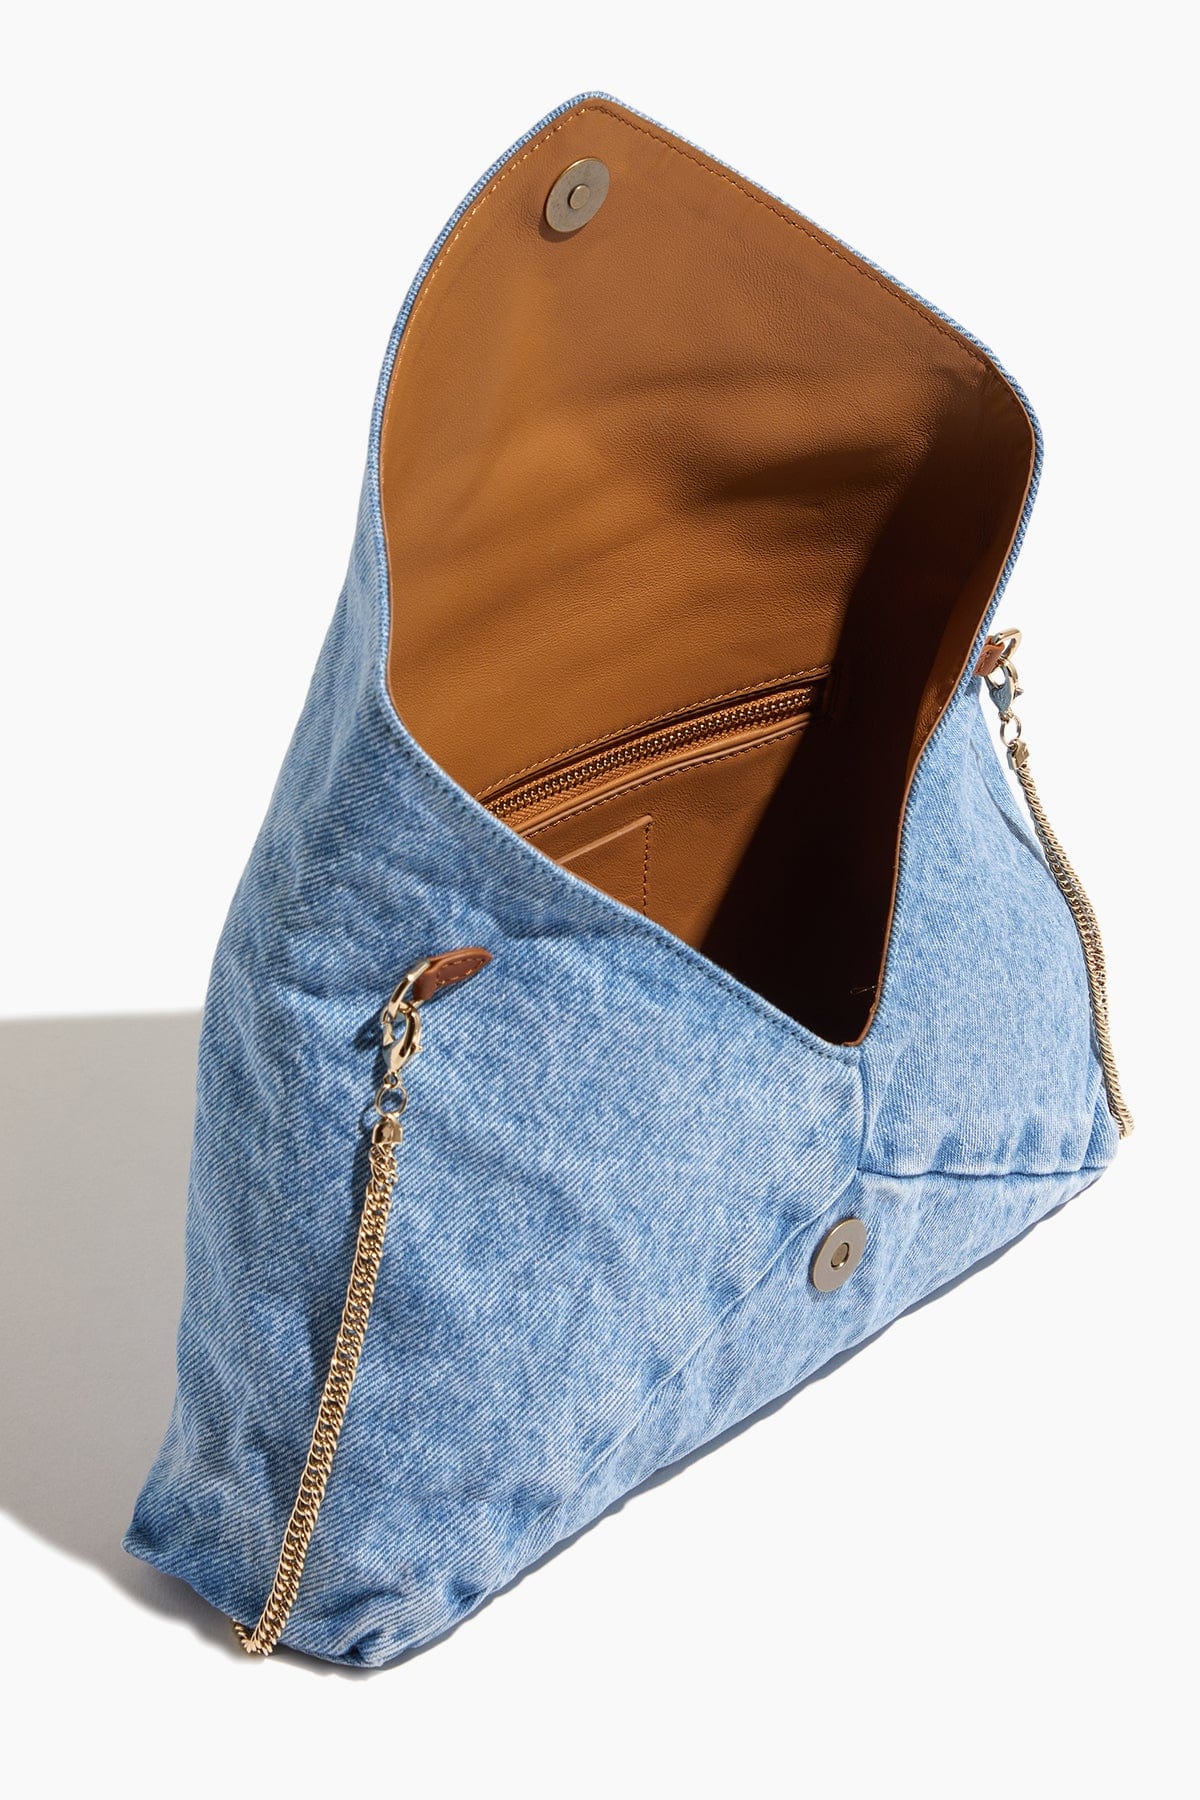 Dries Van Noten Clutches Capacious Hand Bag in Light Blue Dries Van Noten Capacious Hand Bag in Light Blue